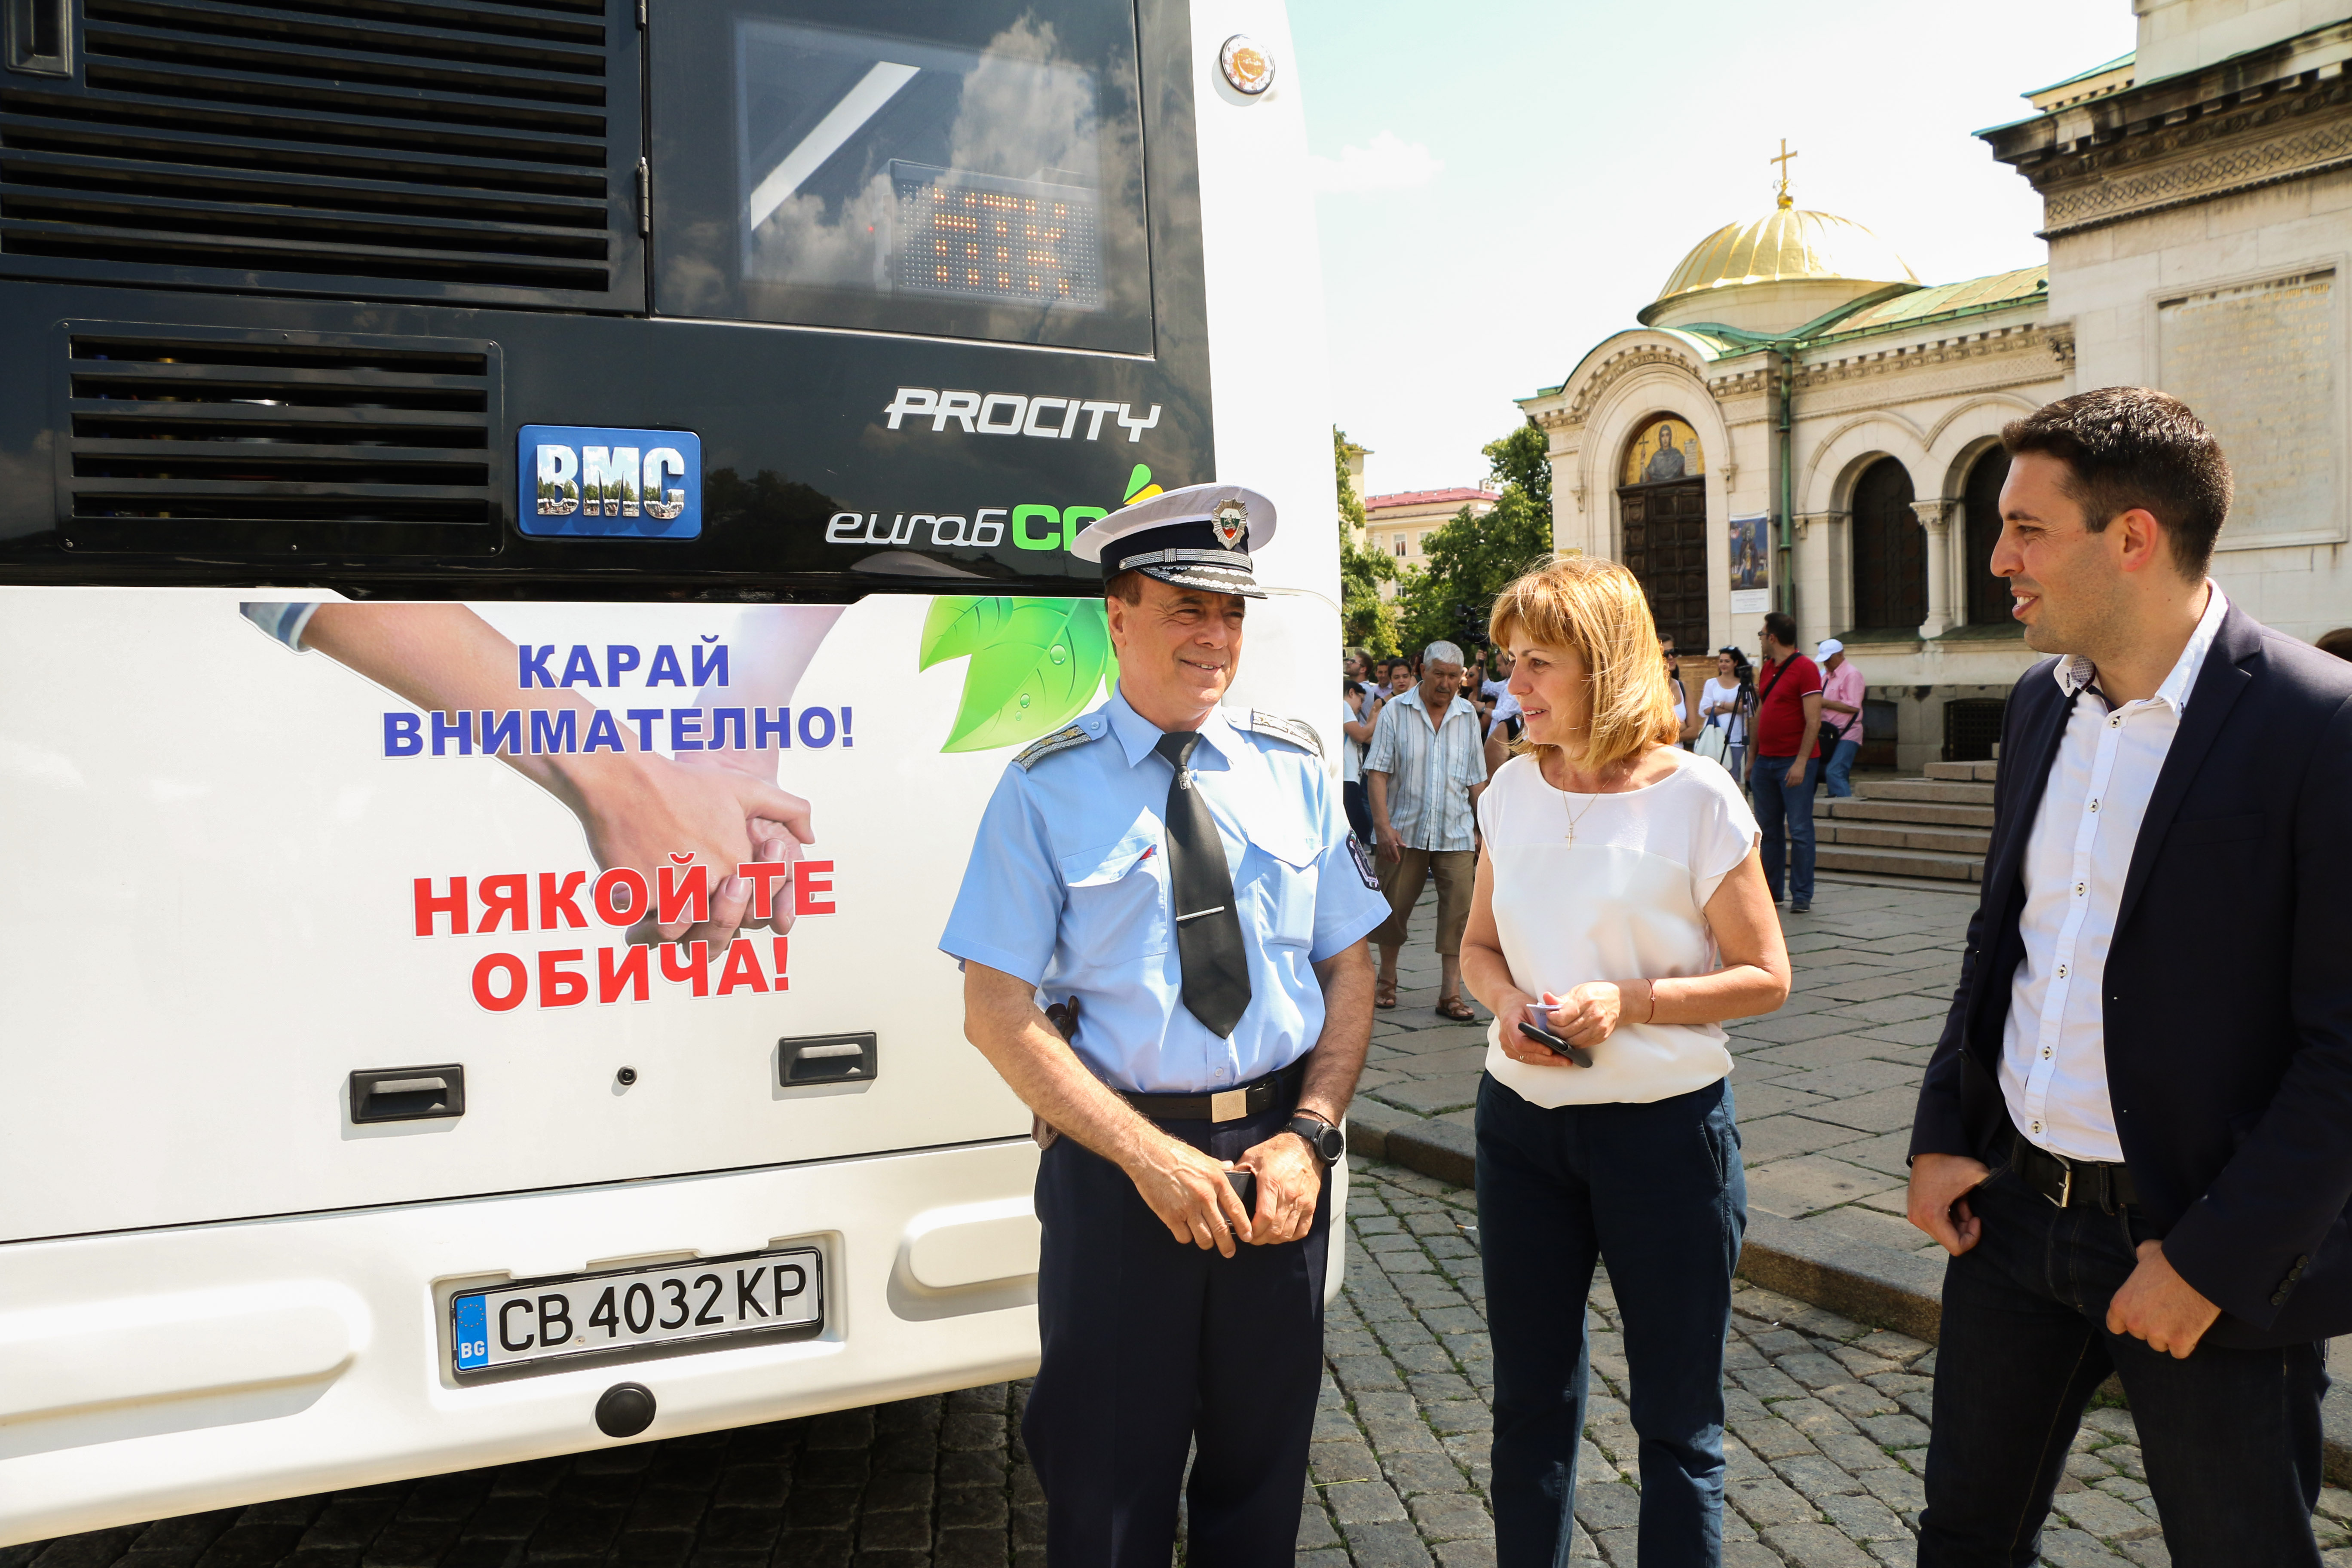 60 нови еко автобуса с климатици тръгват в София от днес